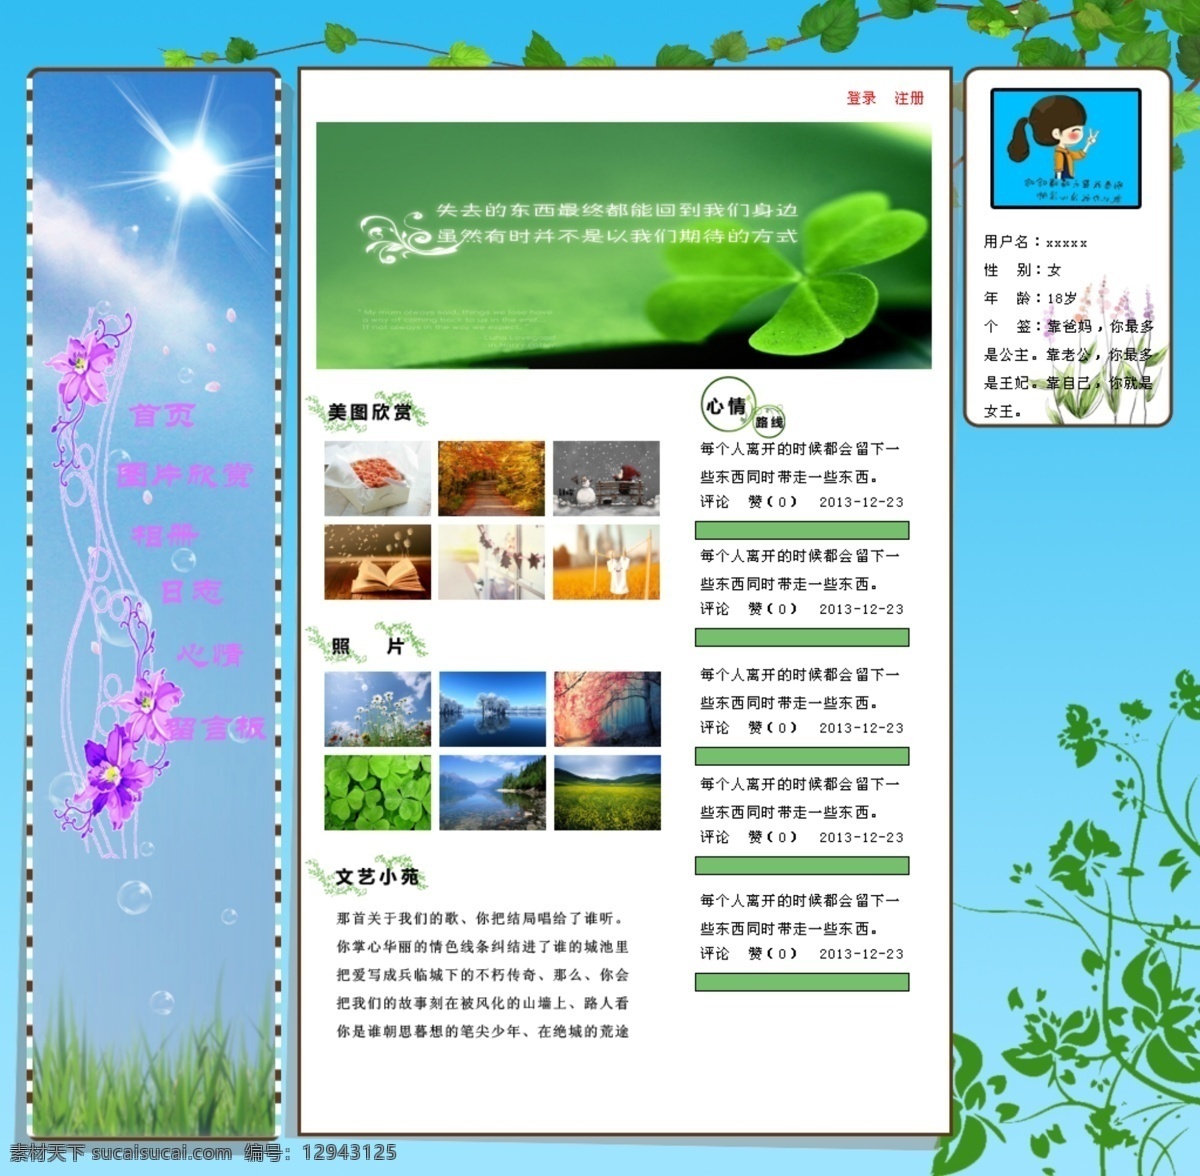 个人主页 模板下载 花藤 绿色 网页模板 源文件 中文模板 主页 小窝 网页素材